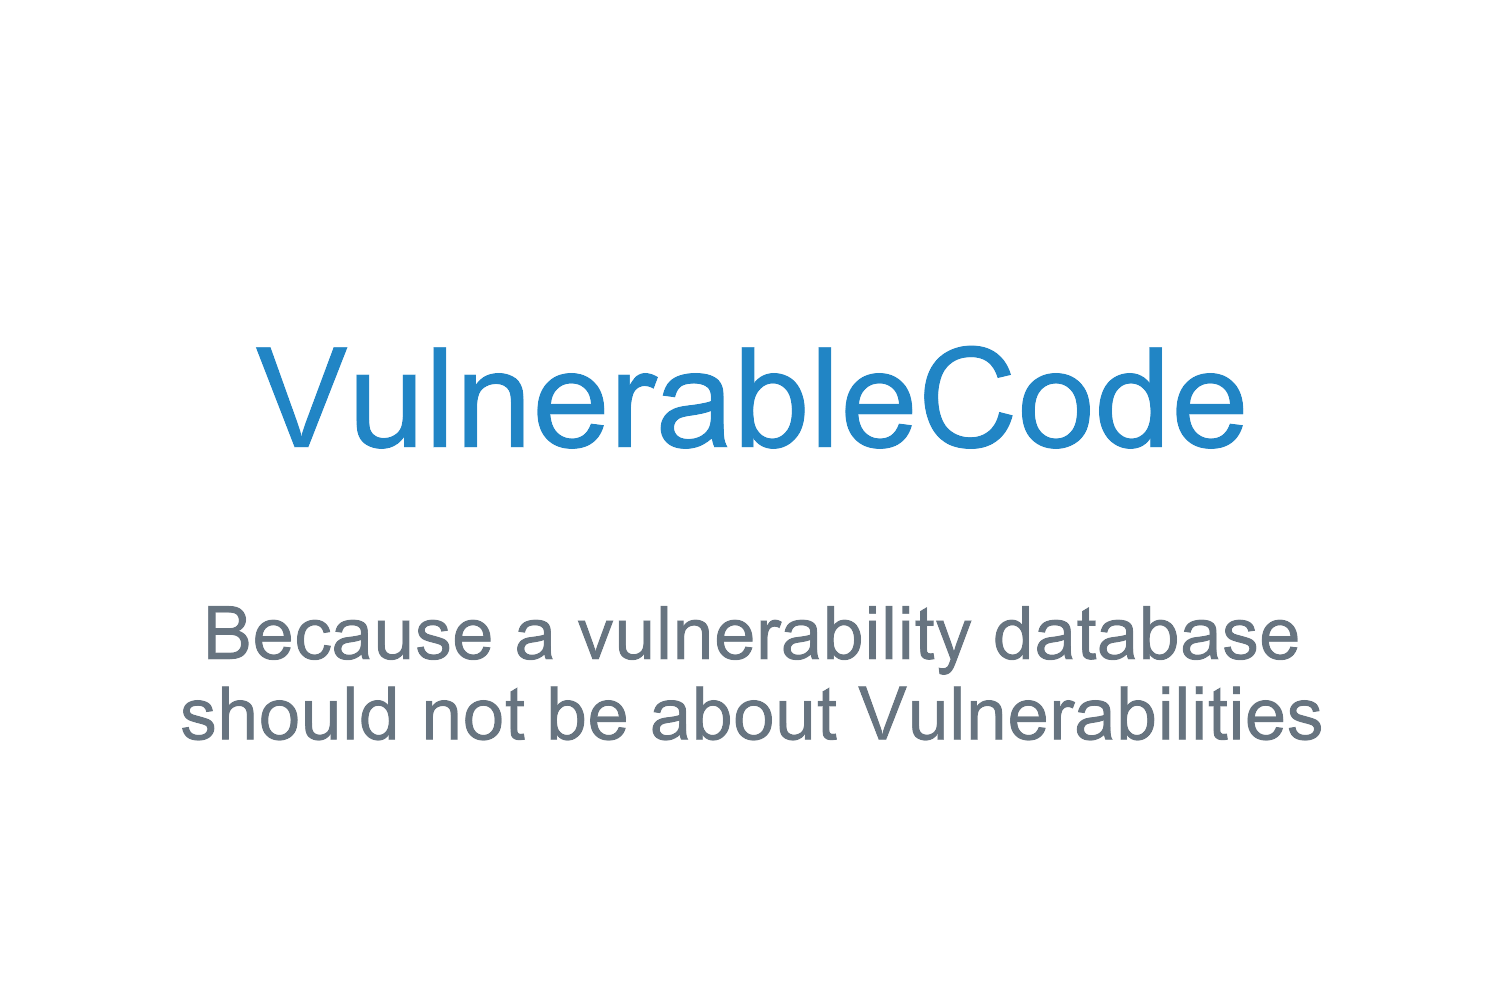 VulnerableCode